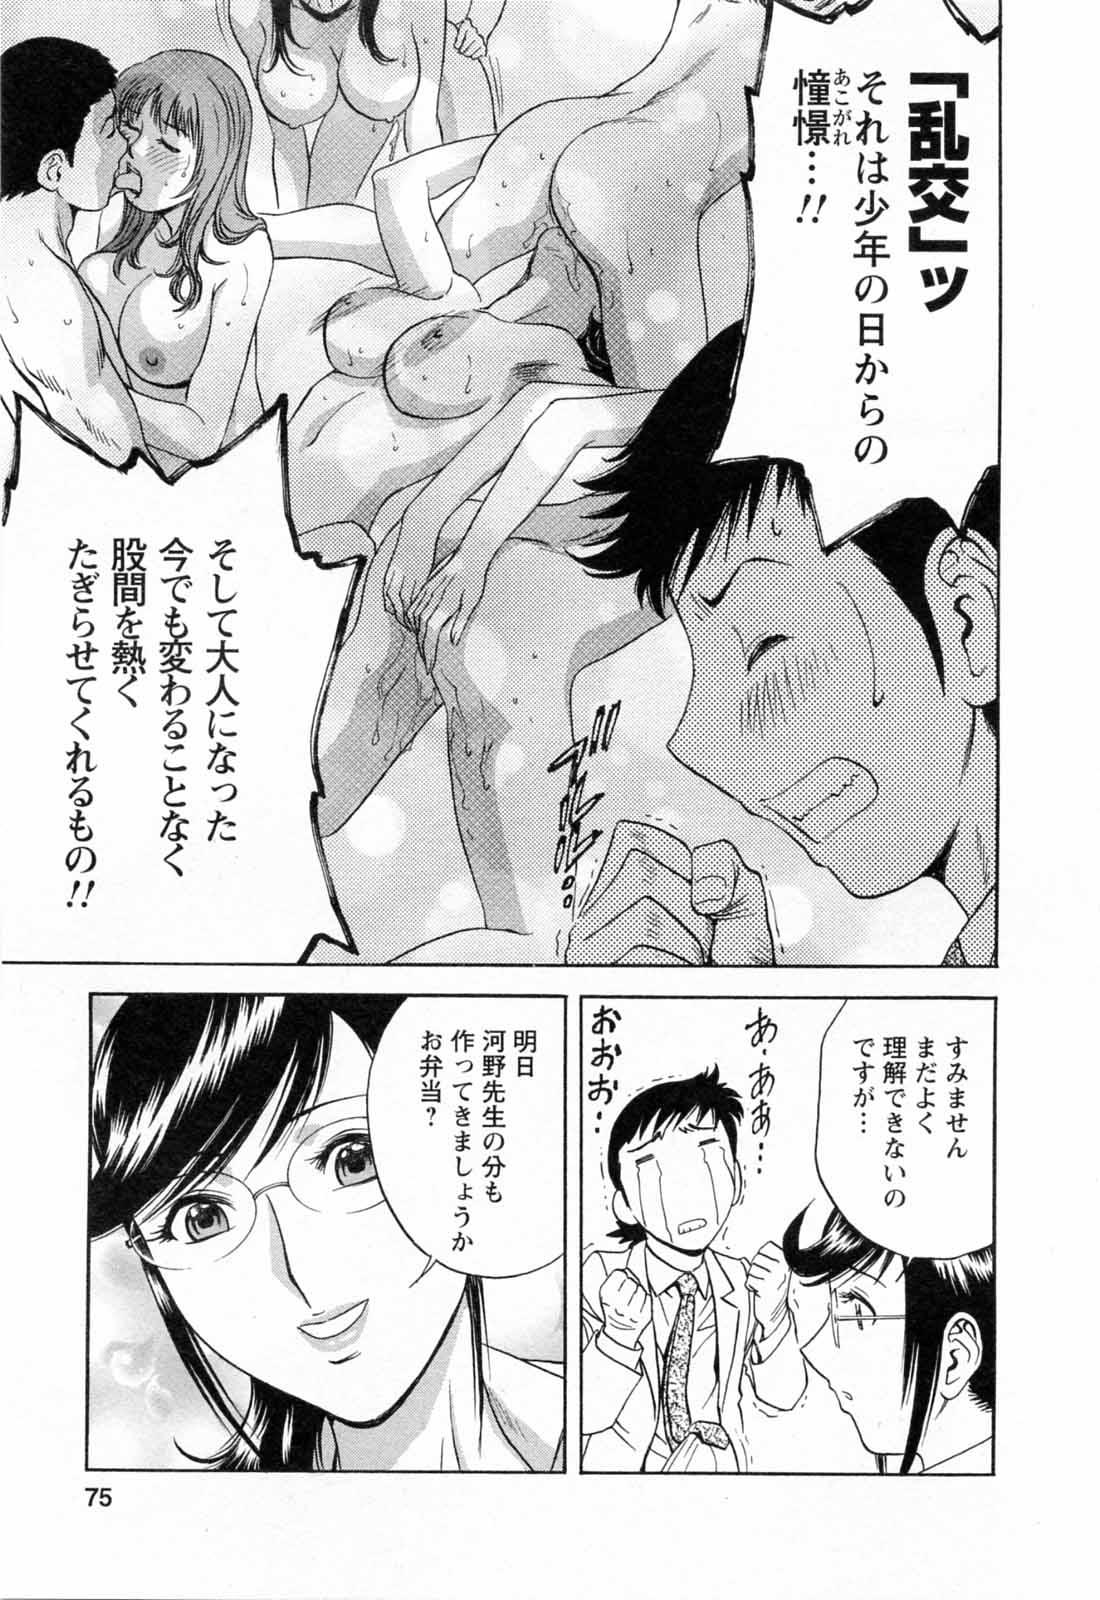 [Hidemaru] Mo-Retsu! Boin Sensei (Boing Boing Teacher) Vol.5 76